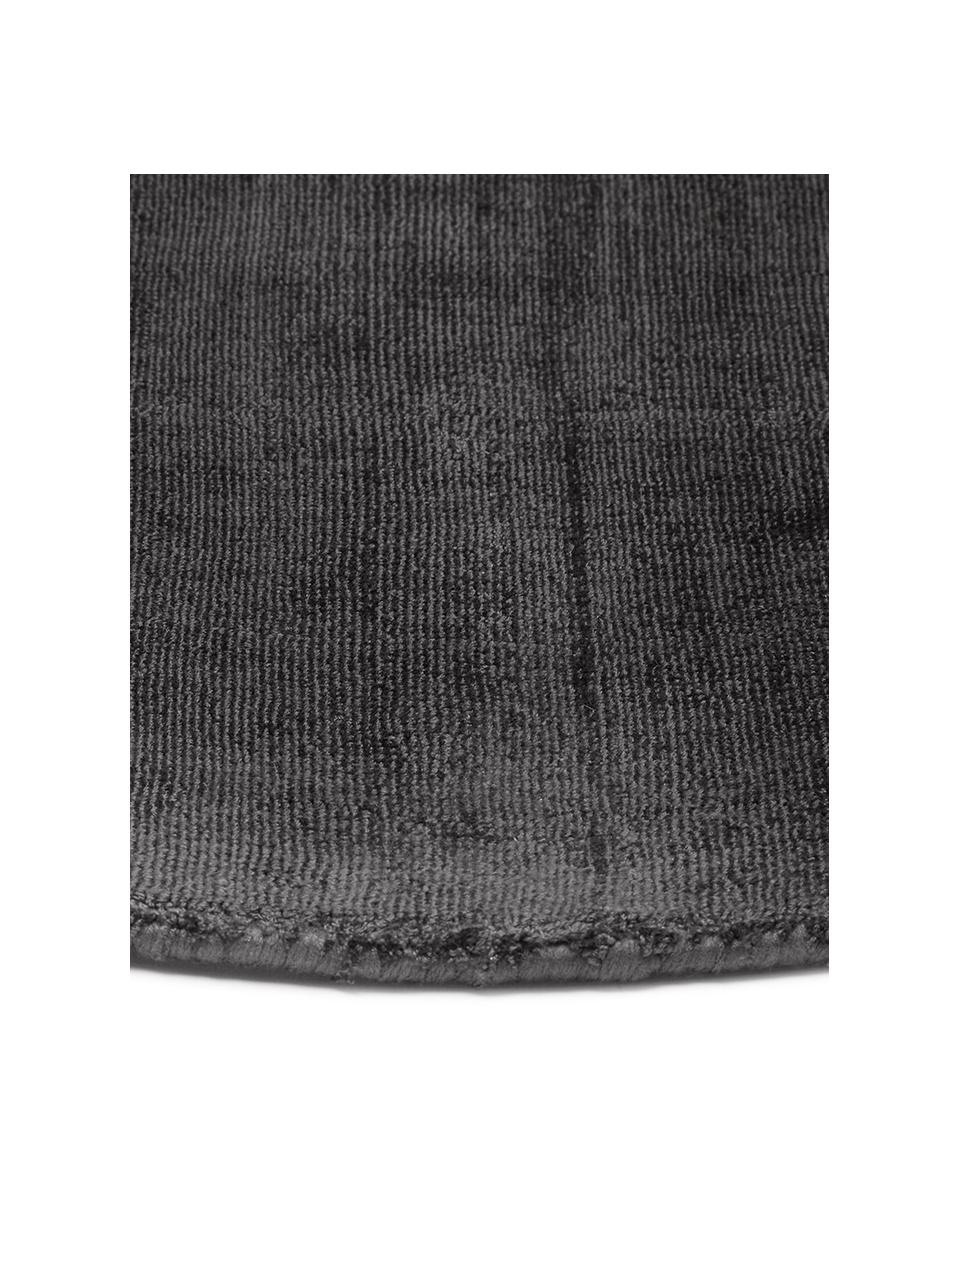 Tappeto rotondo in viscosa color nero-antracite tessuto a mano Jane, Retro: 100% cotone, Nero-antracite, Ø 200 cm (taglia L)